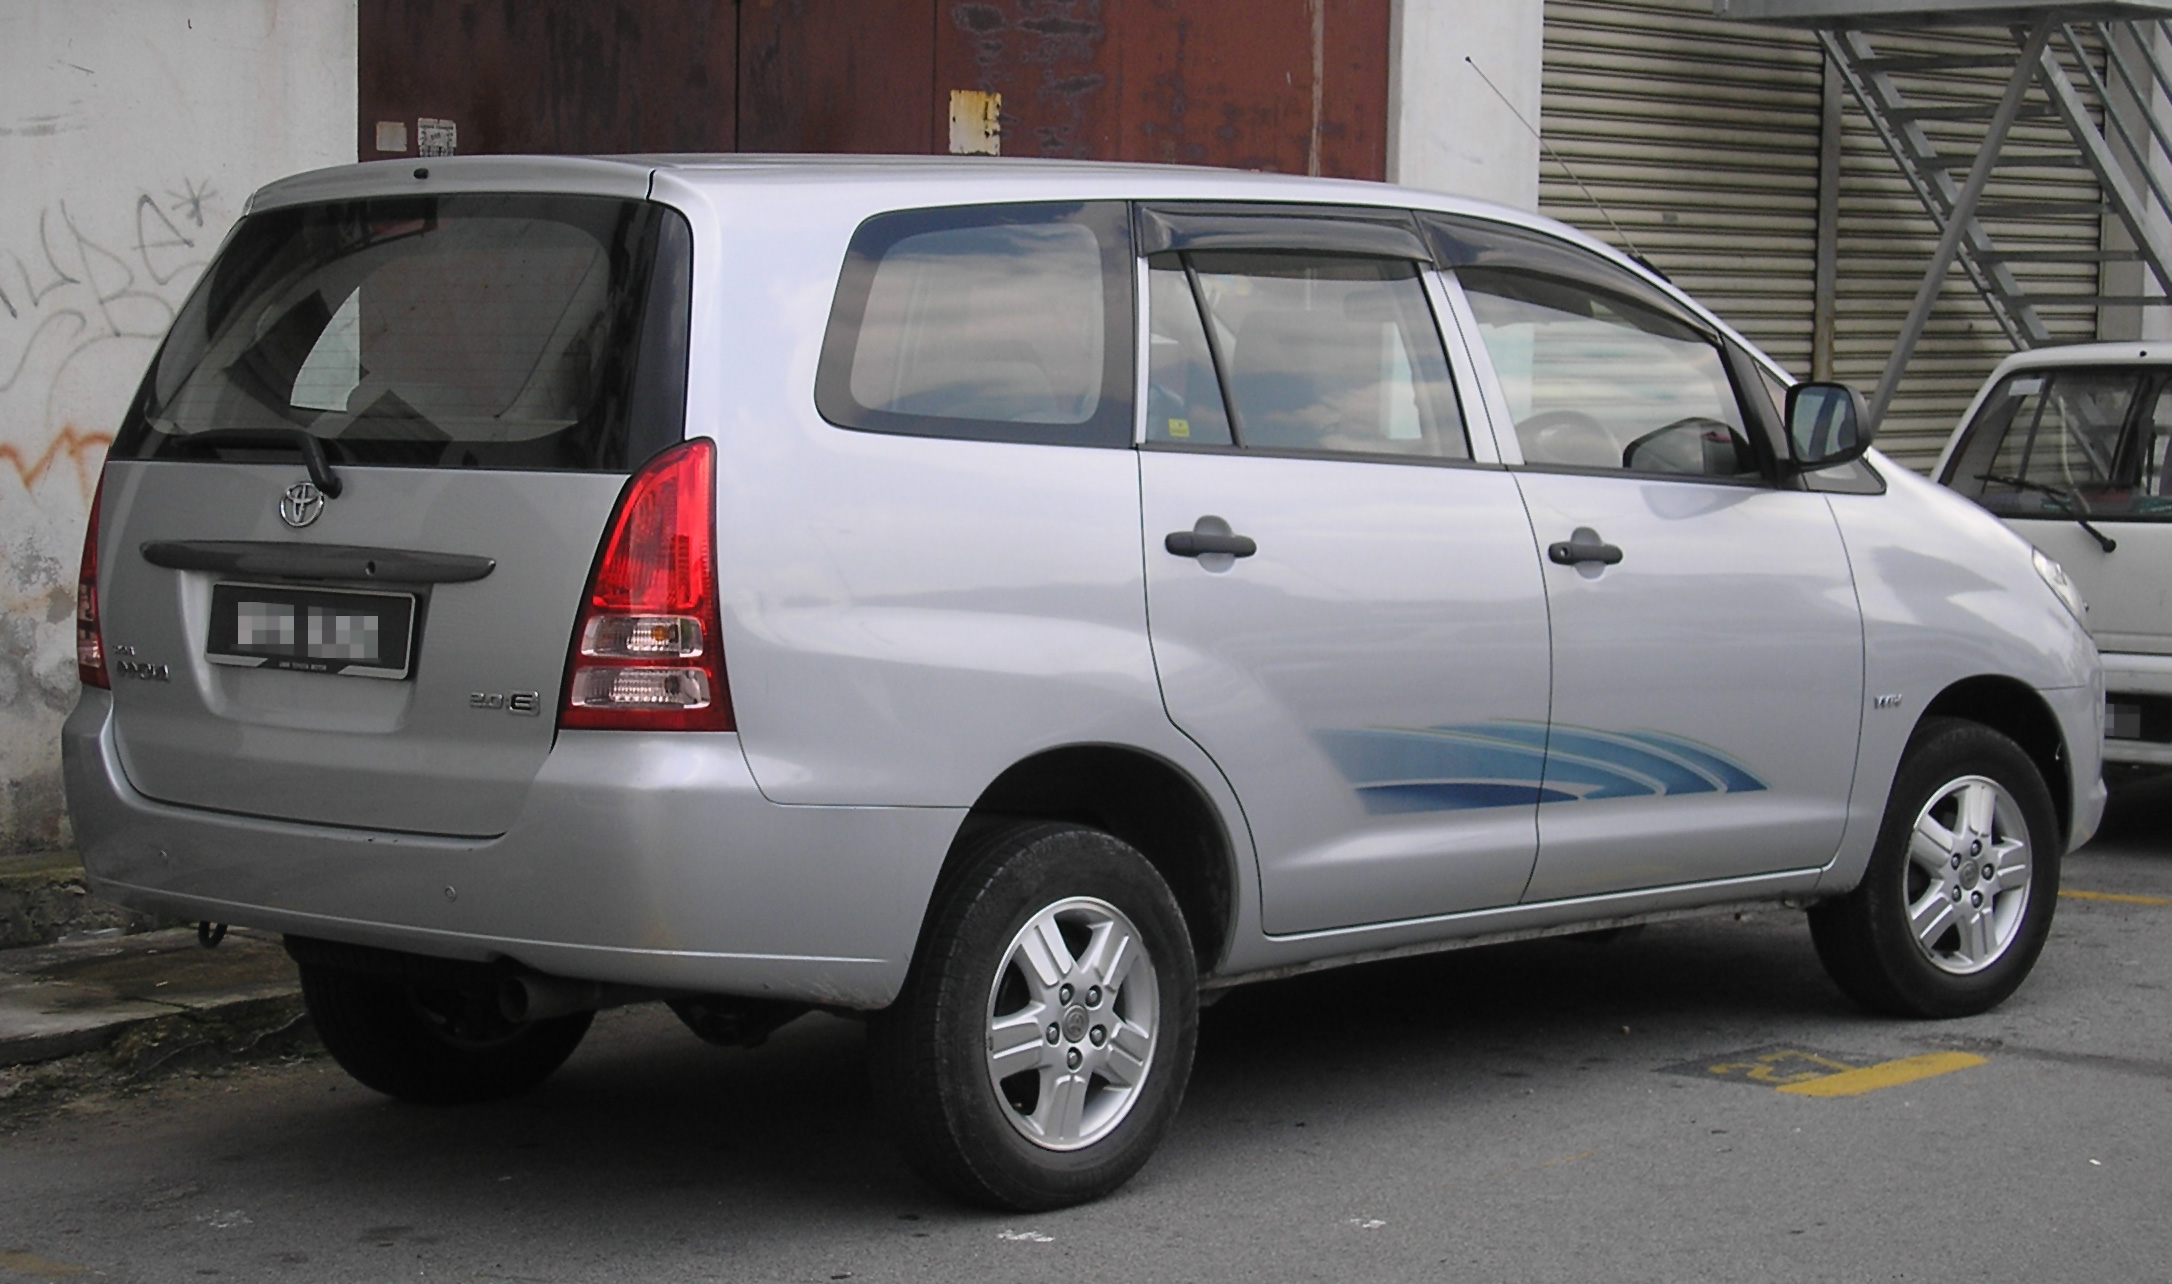 File:Toyota Innova (first generation) (rear), Kajang.jpg